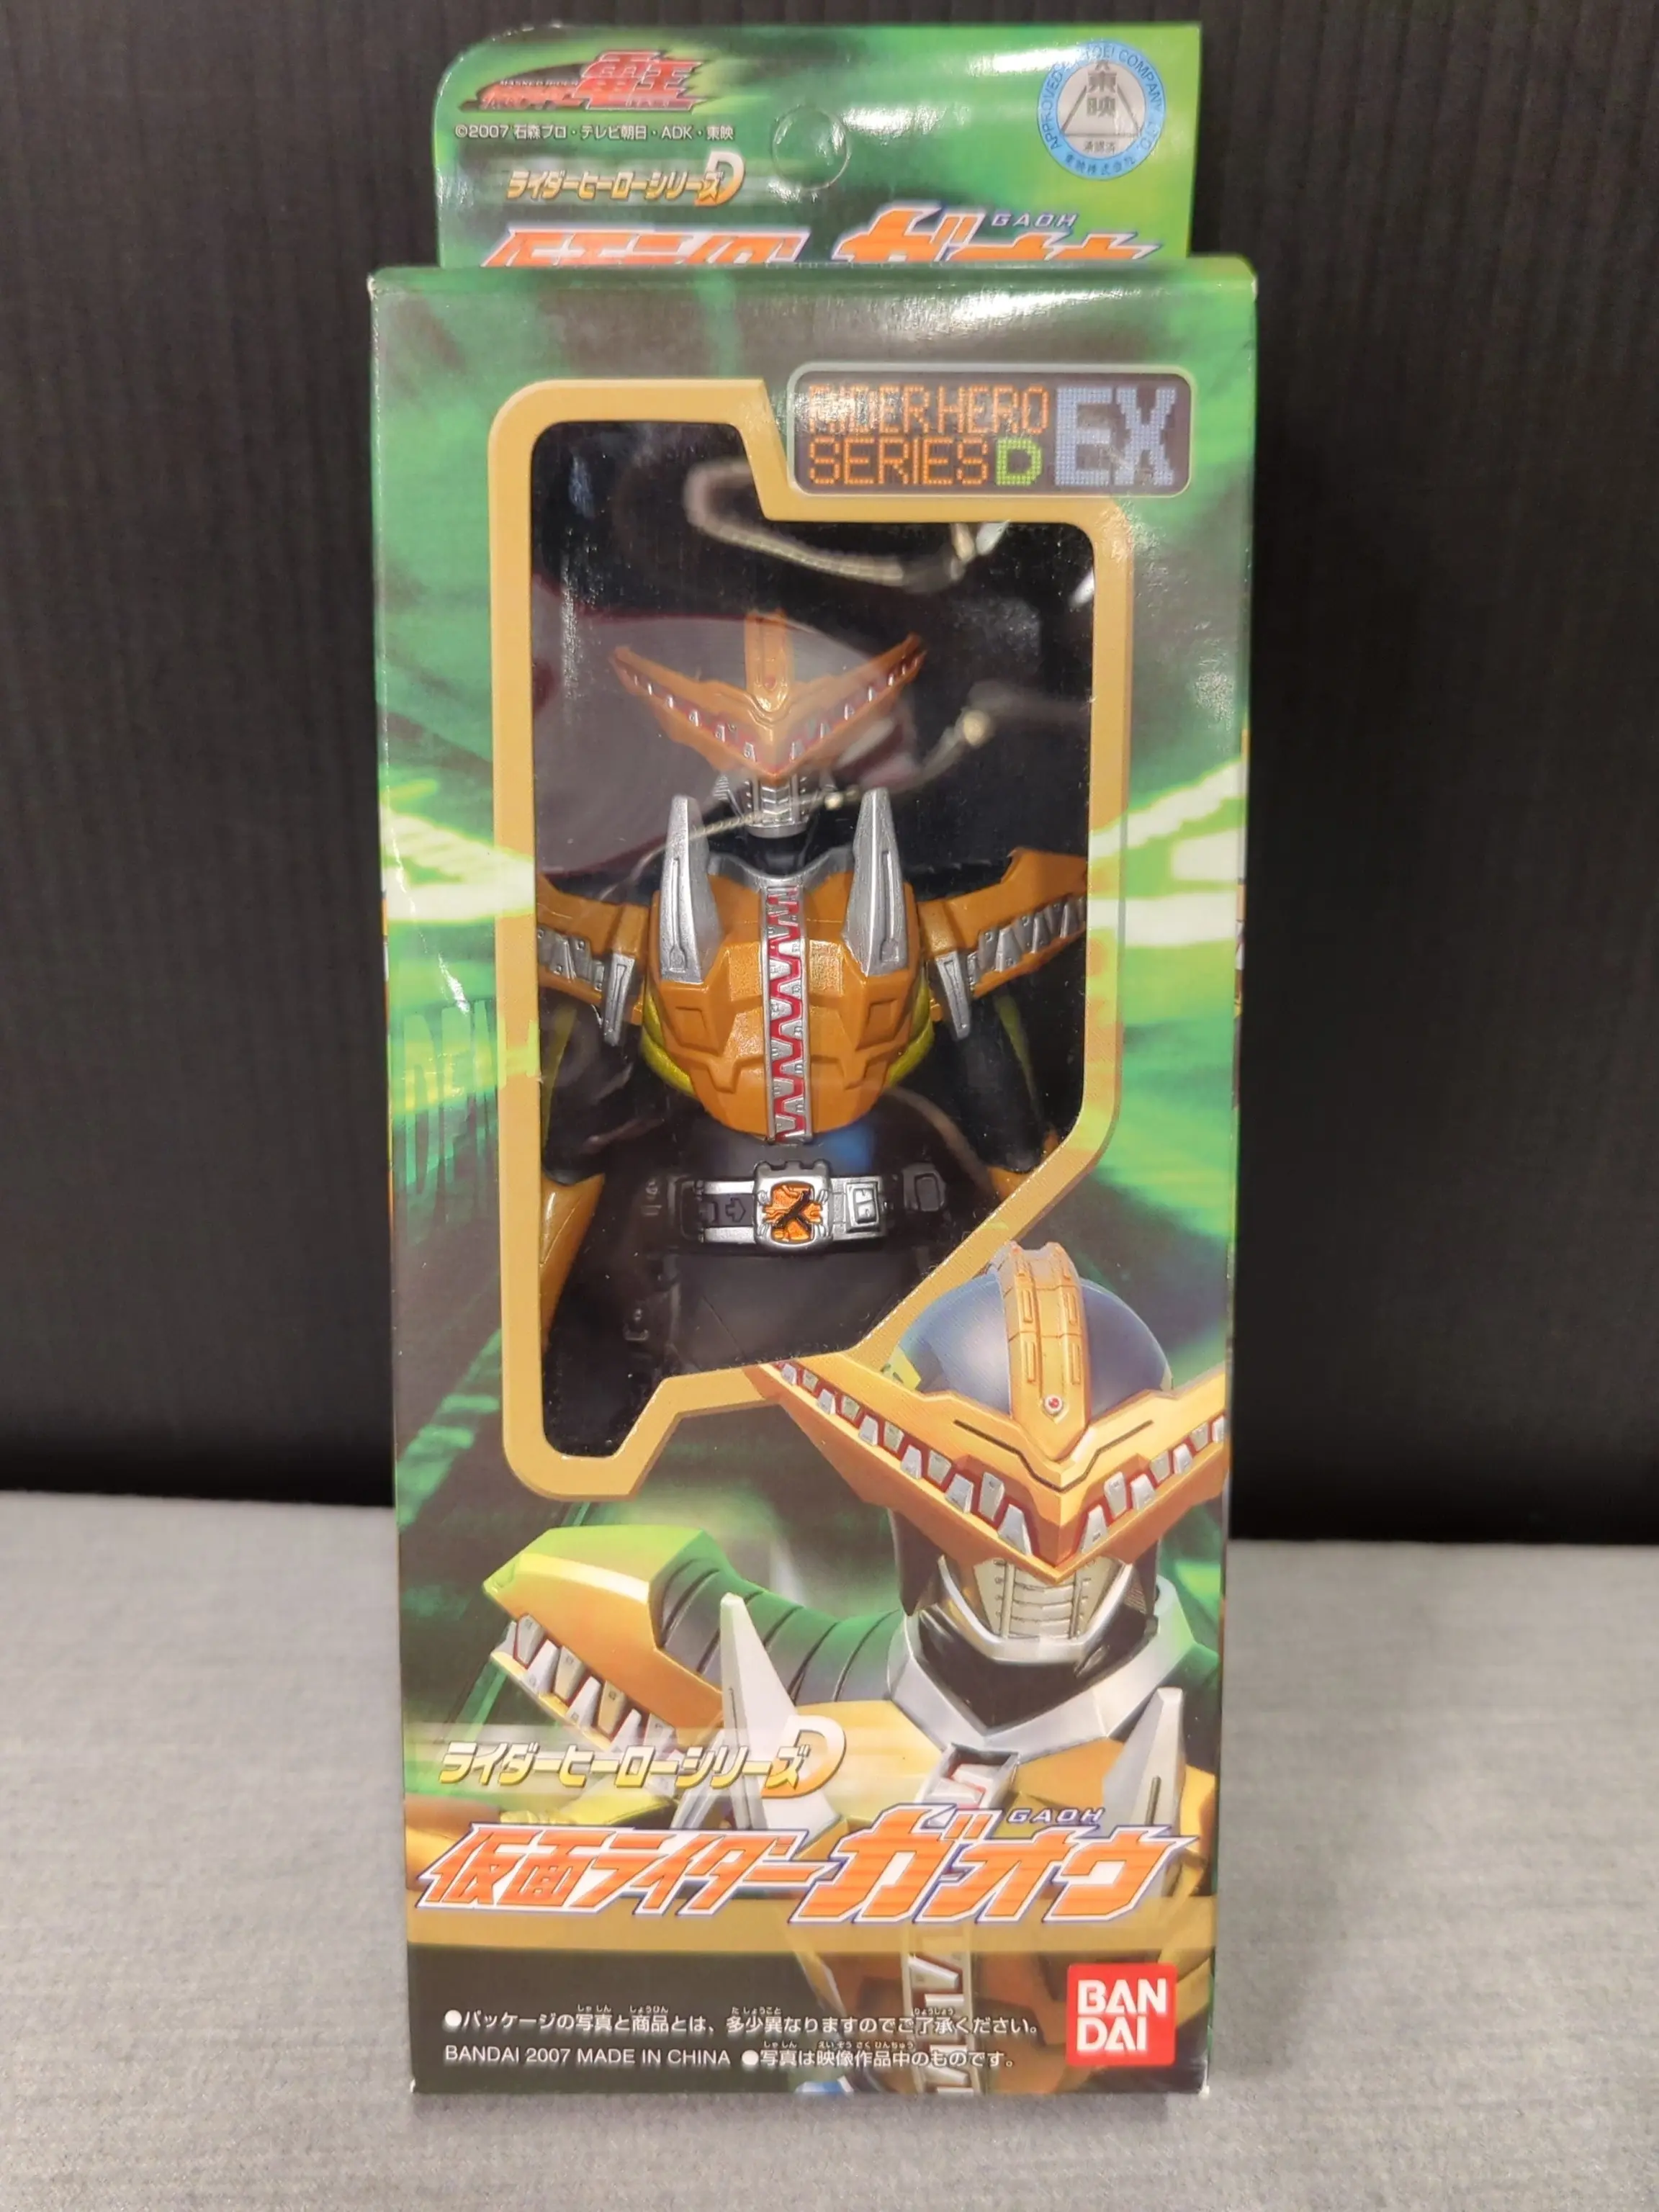 Sofubi Figure - Kamen Rider Den-O